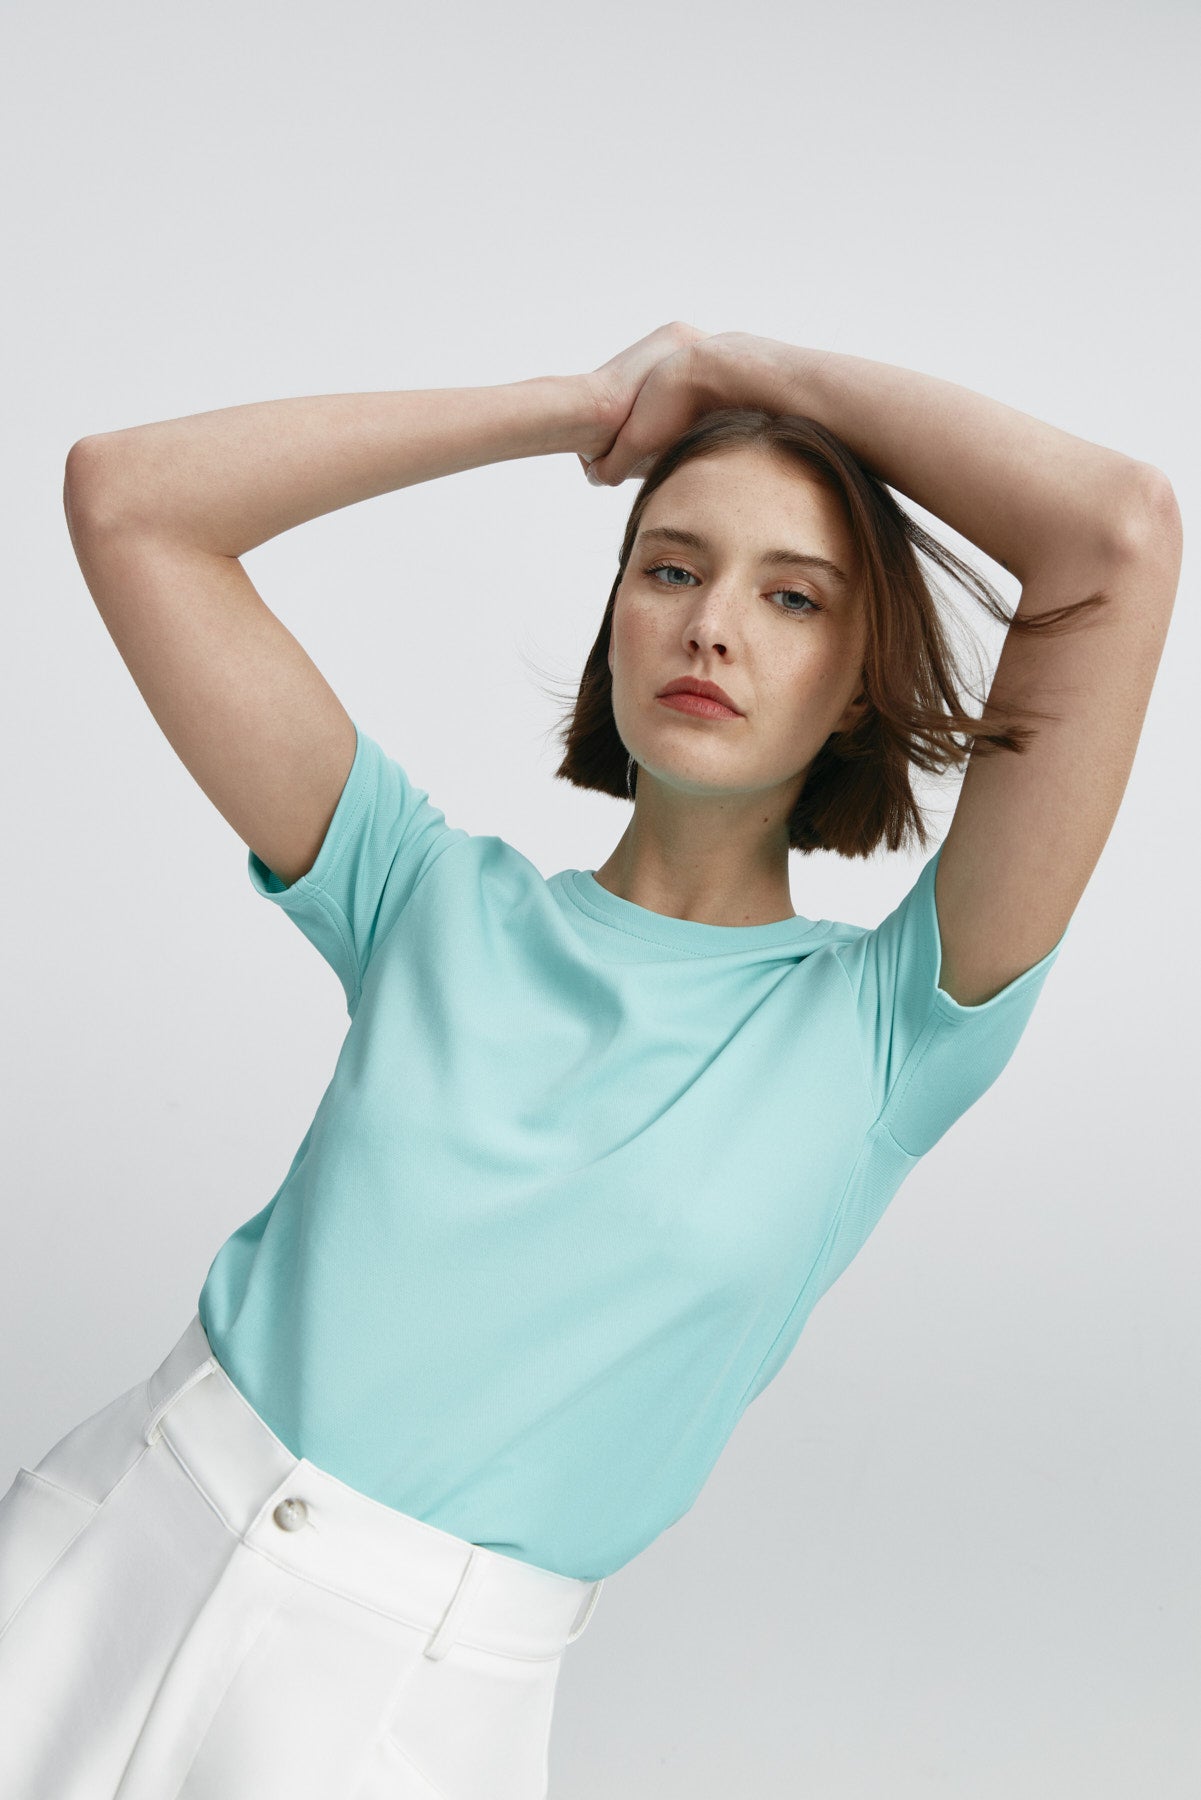 Camiseta ICE de mujer azual aqua de manga corta, antiarrugas y antimanchas. Foto flexibilidad